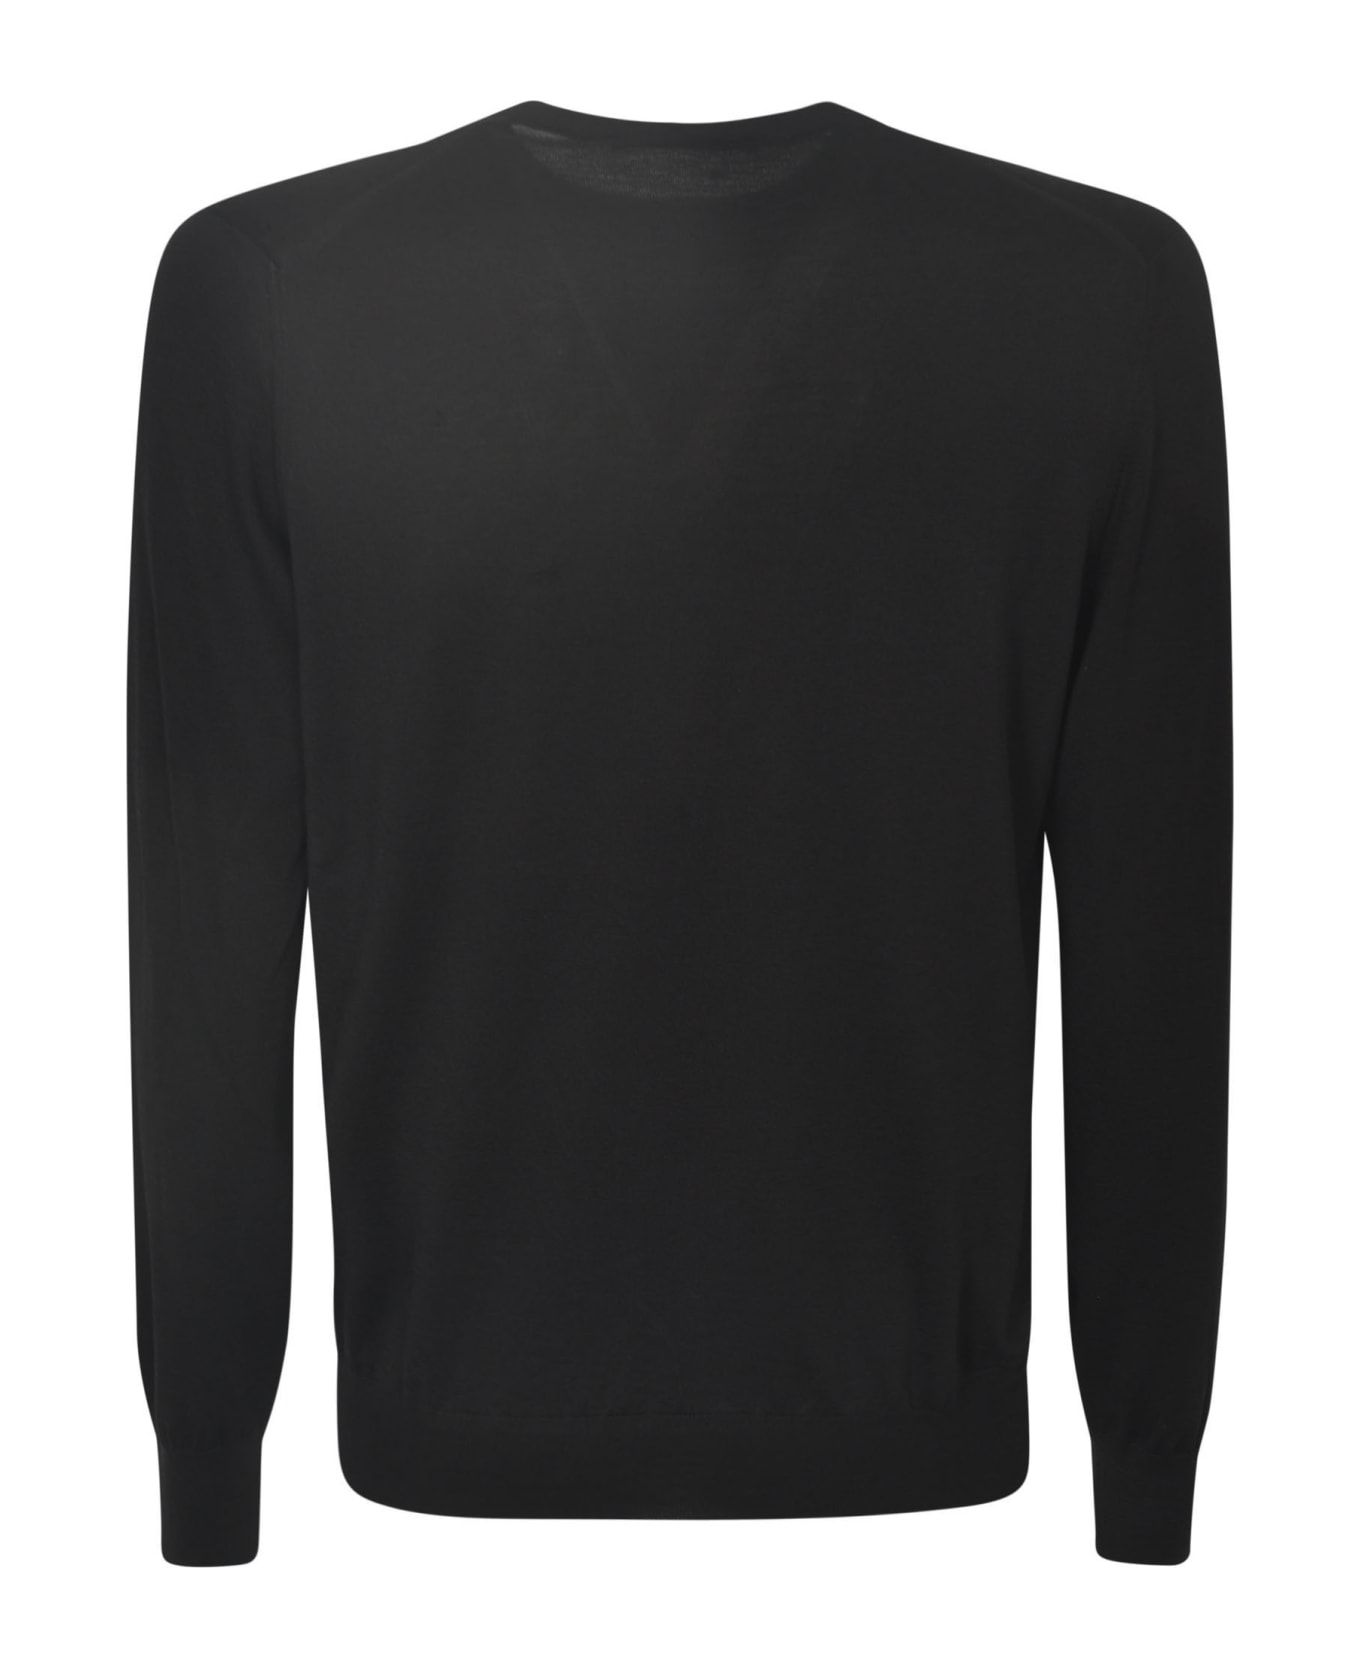 Tagliatore Gray Sweater - Black